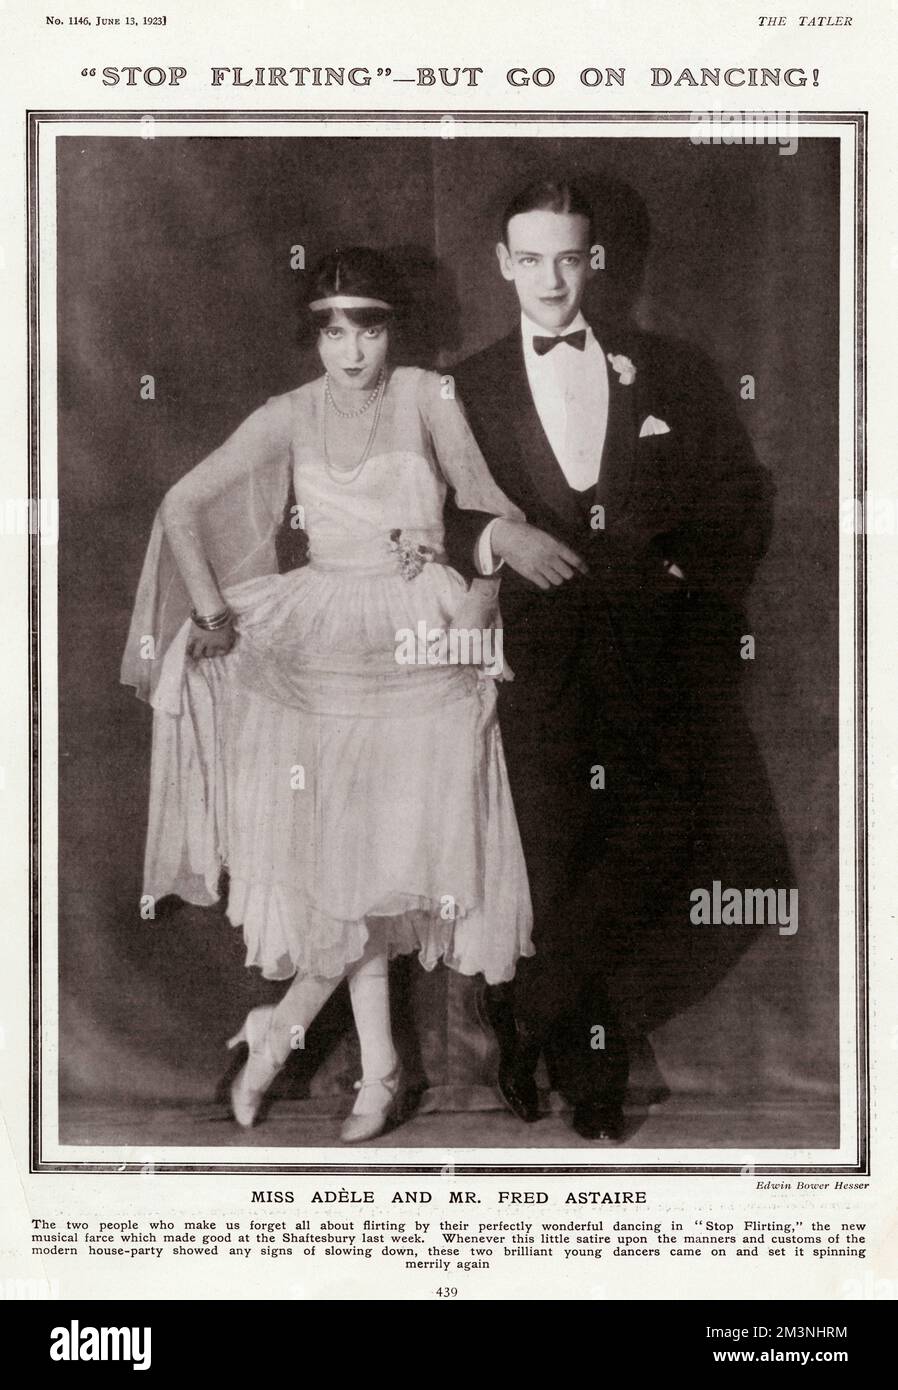 Fred Astaire, geboren Frederick Austerlitz (1899 - 1987), amerikanischer Tänzer und Schauspieler, abgebildet mit seiner älteren Schwester Adele (1896 - 1981), die von Kindheit bis 1932 seine Tanzpartnerin war, als sie sich vom Tanz zurückzog, um den britischen Aristokraten Lord Charles Spencer Cavendish zu heiraten, Zweiter Sohn des 9.. Herzogs von Devonshire. Sie wurden zu der Zeit im „Stop Flirting“ im Shaftesbury Theatre in London im Jahr 1923 gezeigt. Datum: 1923 Stockfoto